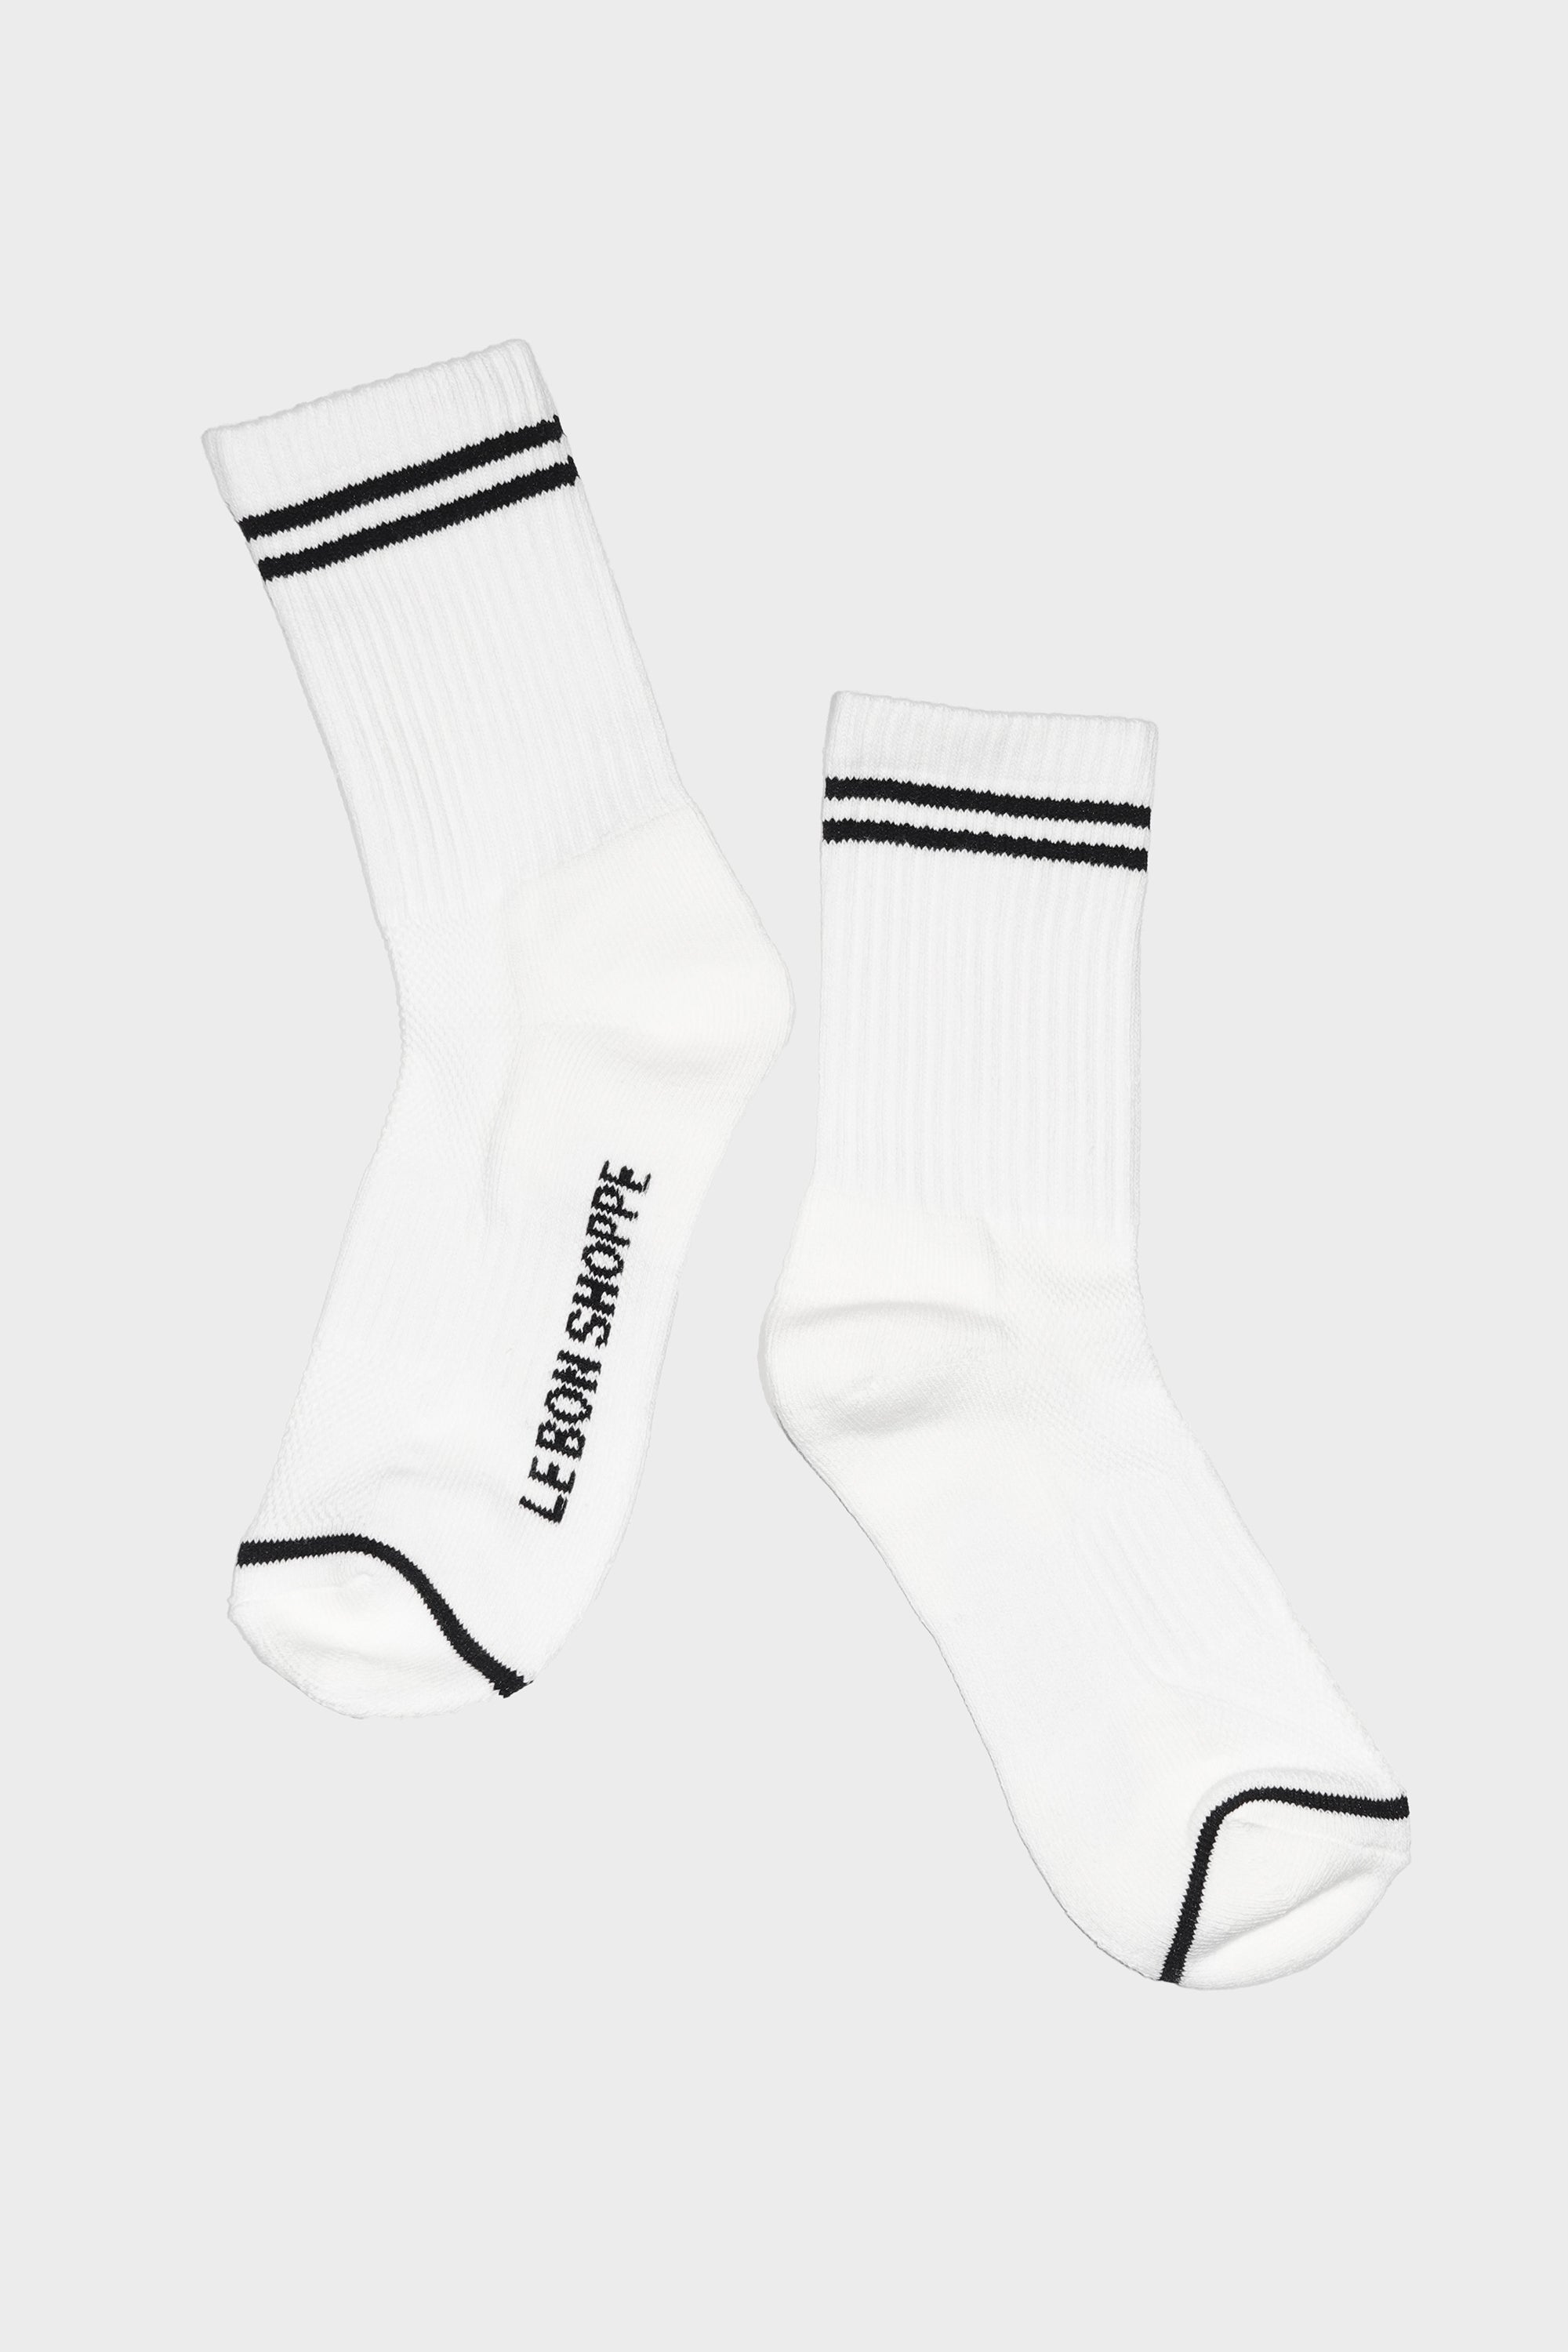 Boyfriend Socks in Classic White by Le Bon Shoppe